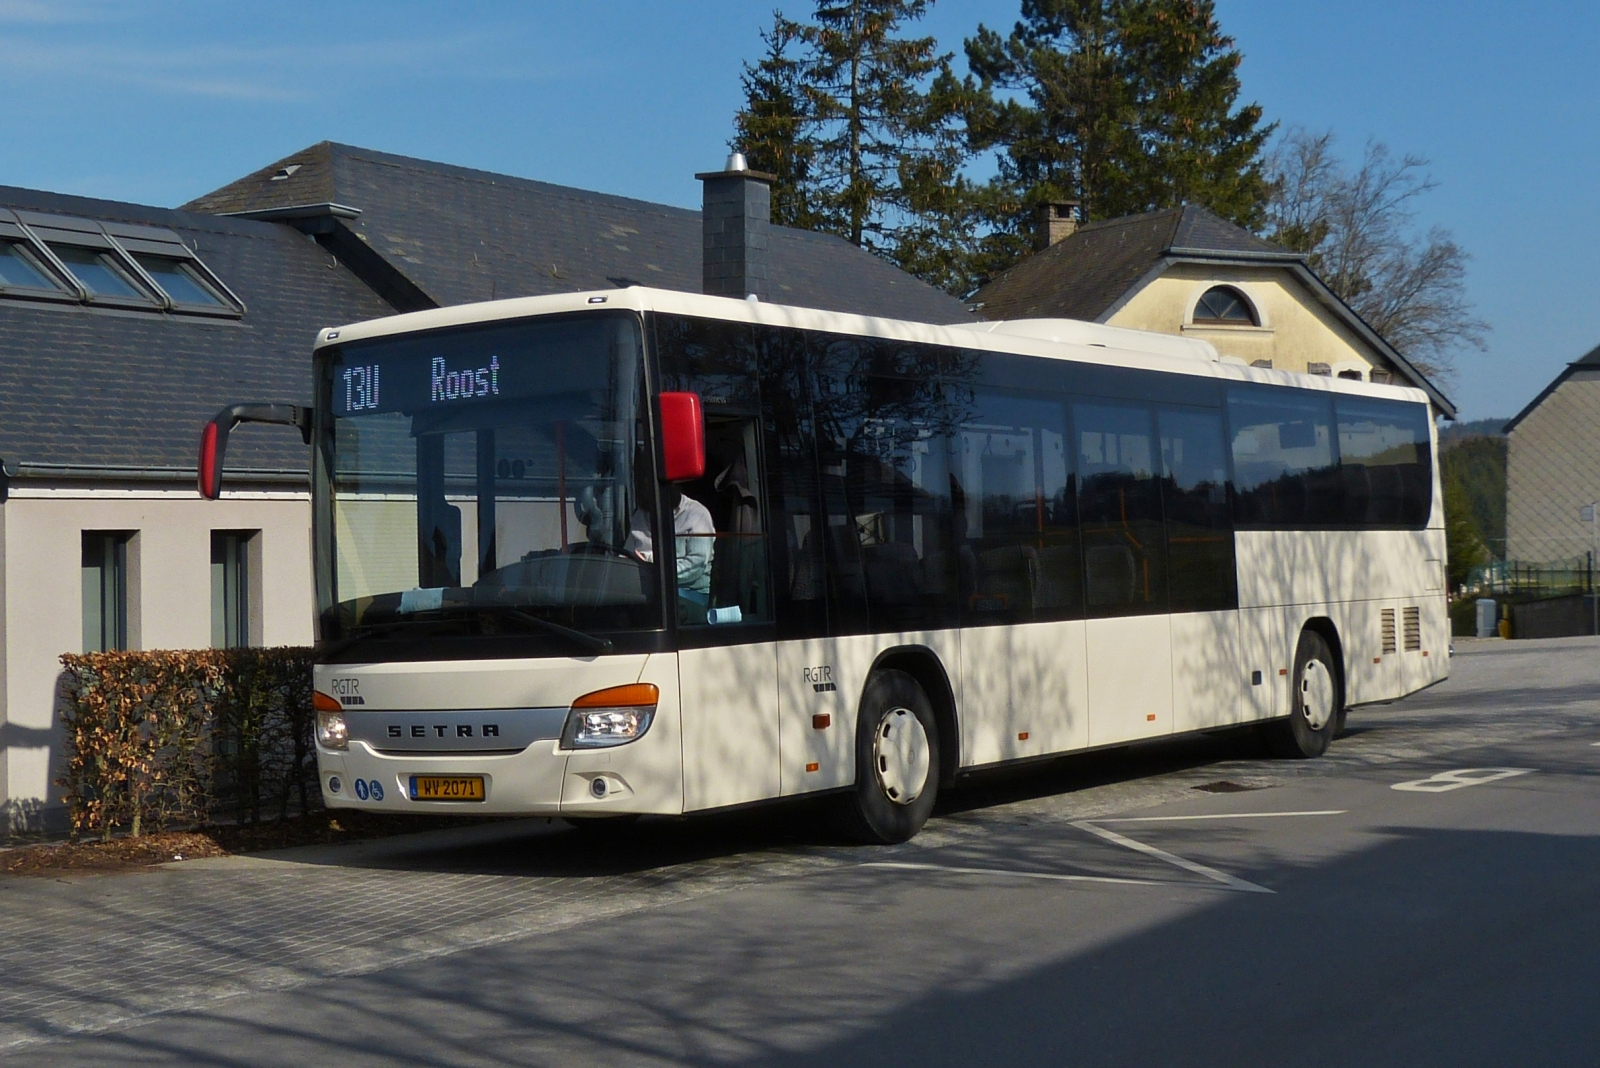 WV 2071, Setra S 415 LE noch ohne Folie, von WEmobility, (ehemals Wagener), wird in Kürze seine Fahrt auf der Linie 13U Erpeldange / Wiltz – Roost, in Angriff nehmen. 03.2023

